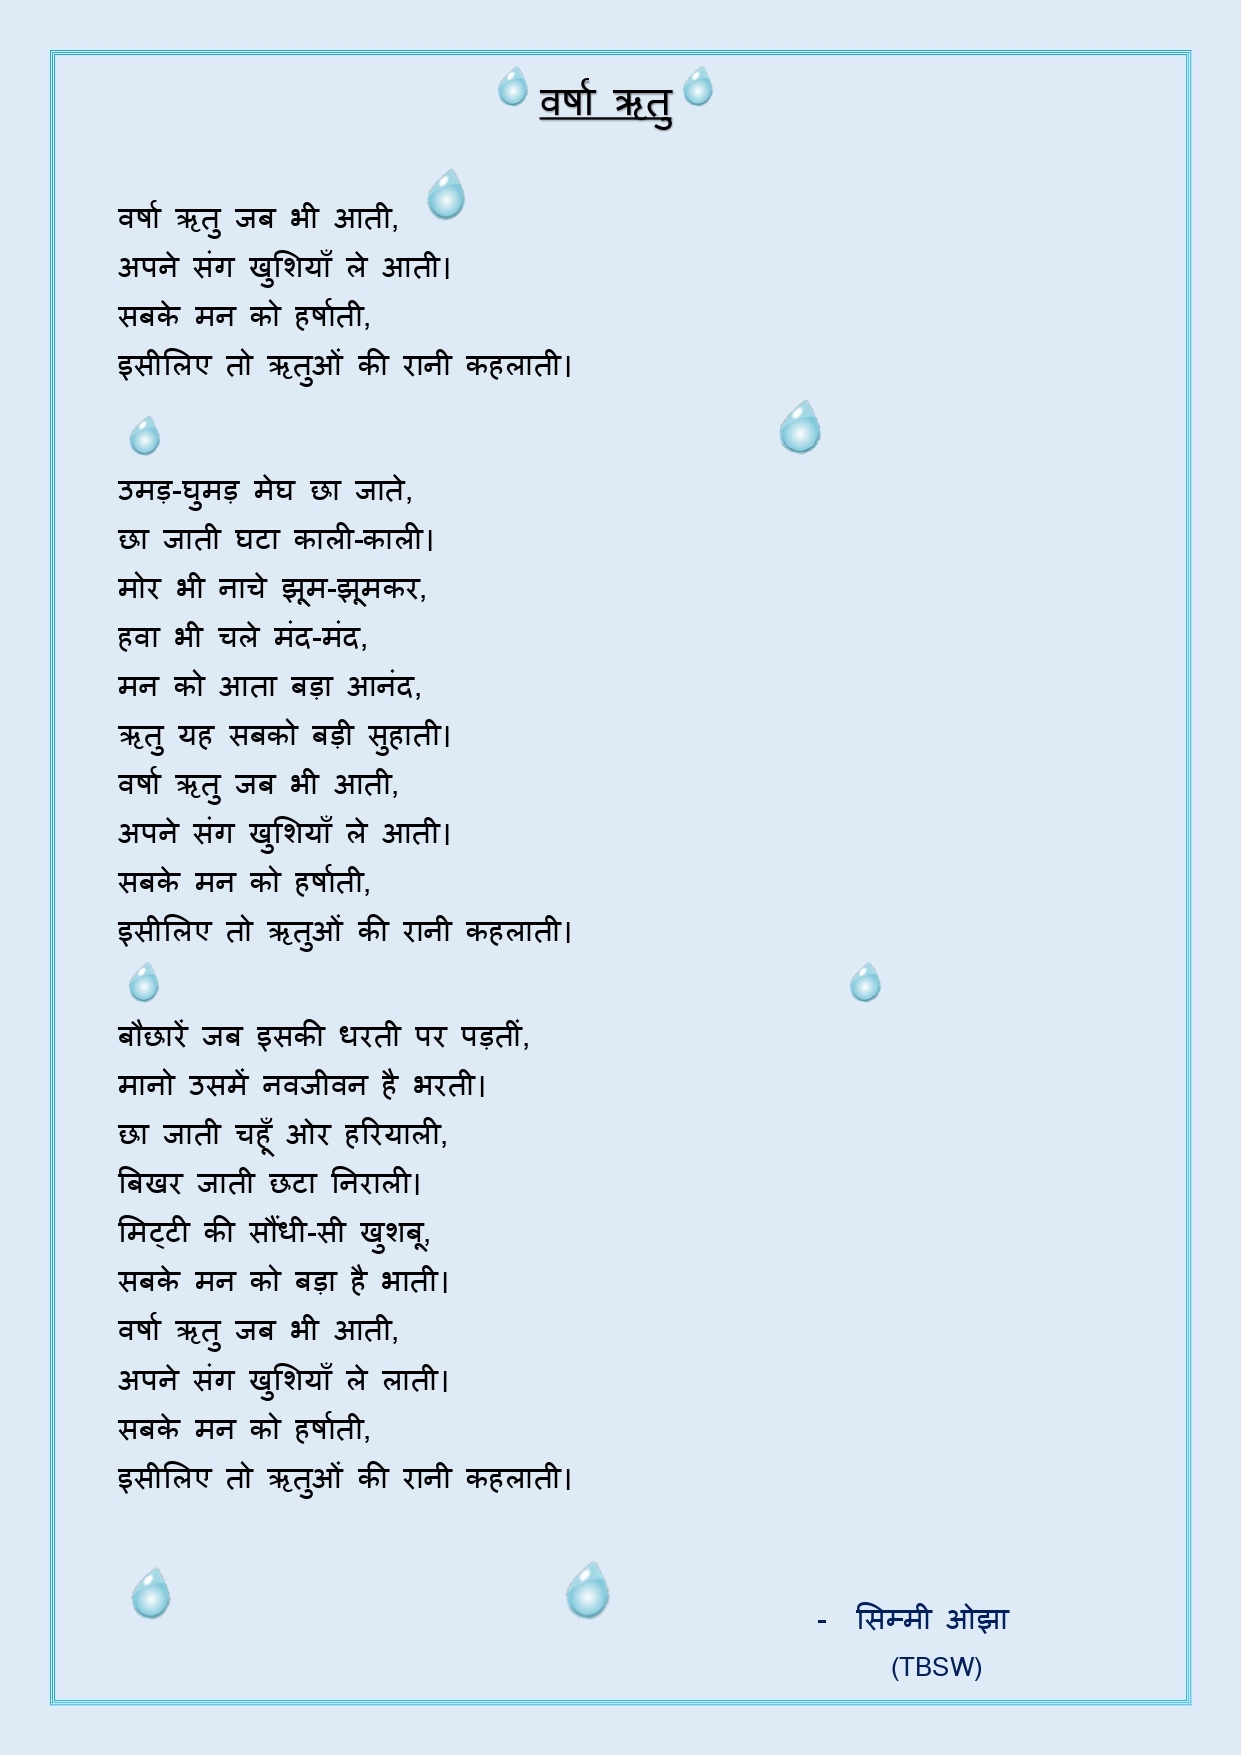 poem written